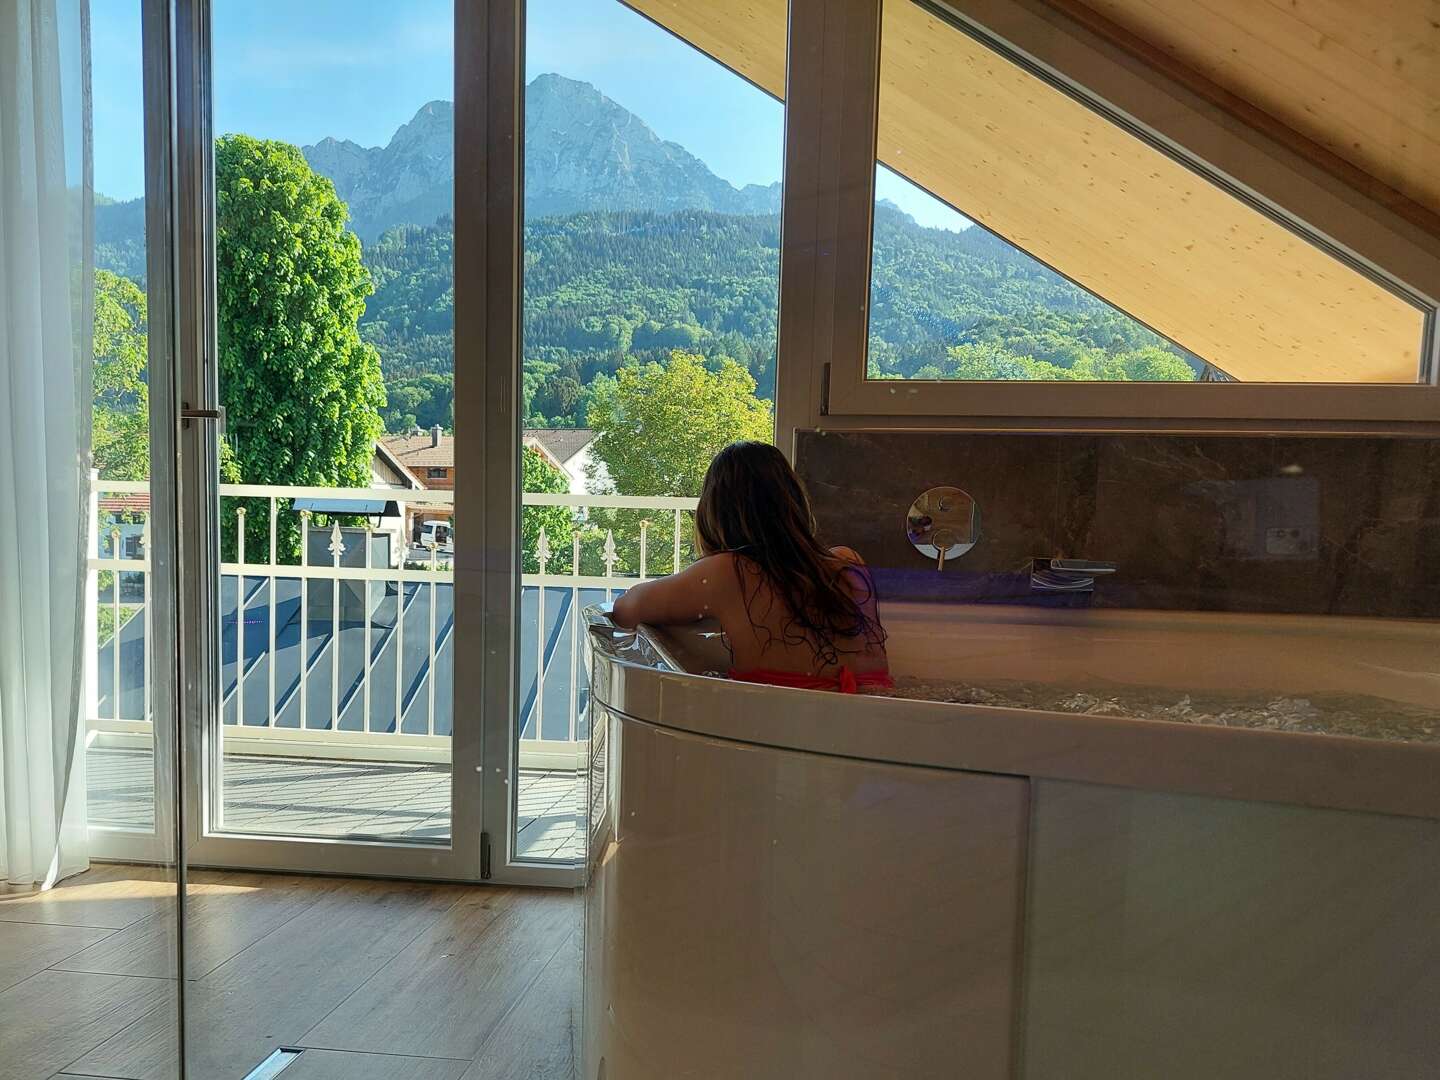 Salzzeitreise, romantische Kuscheltage & Wellness in den Bergen im Berchtesgadener Land